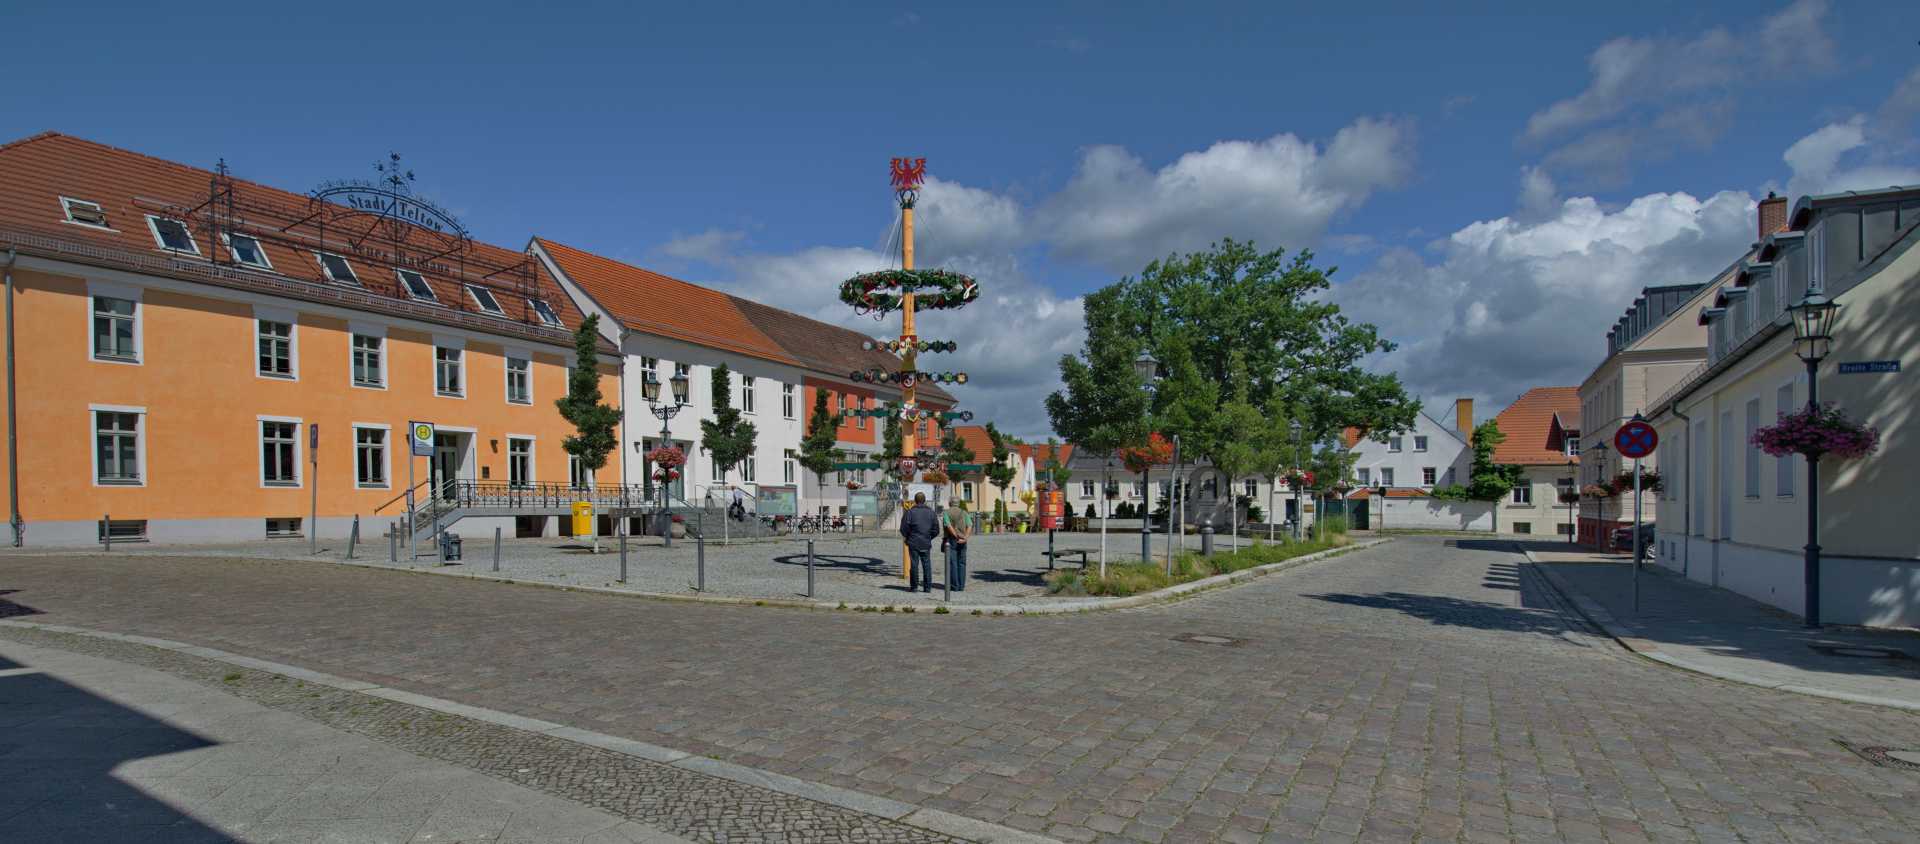 Marktplatz und Rathaus in Teltow